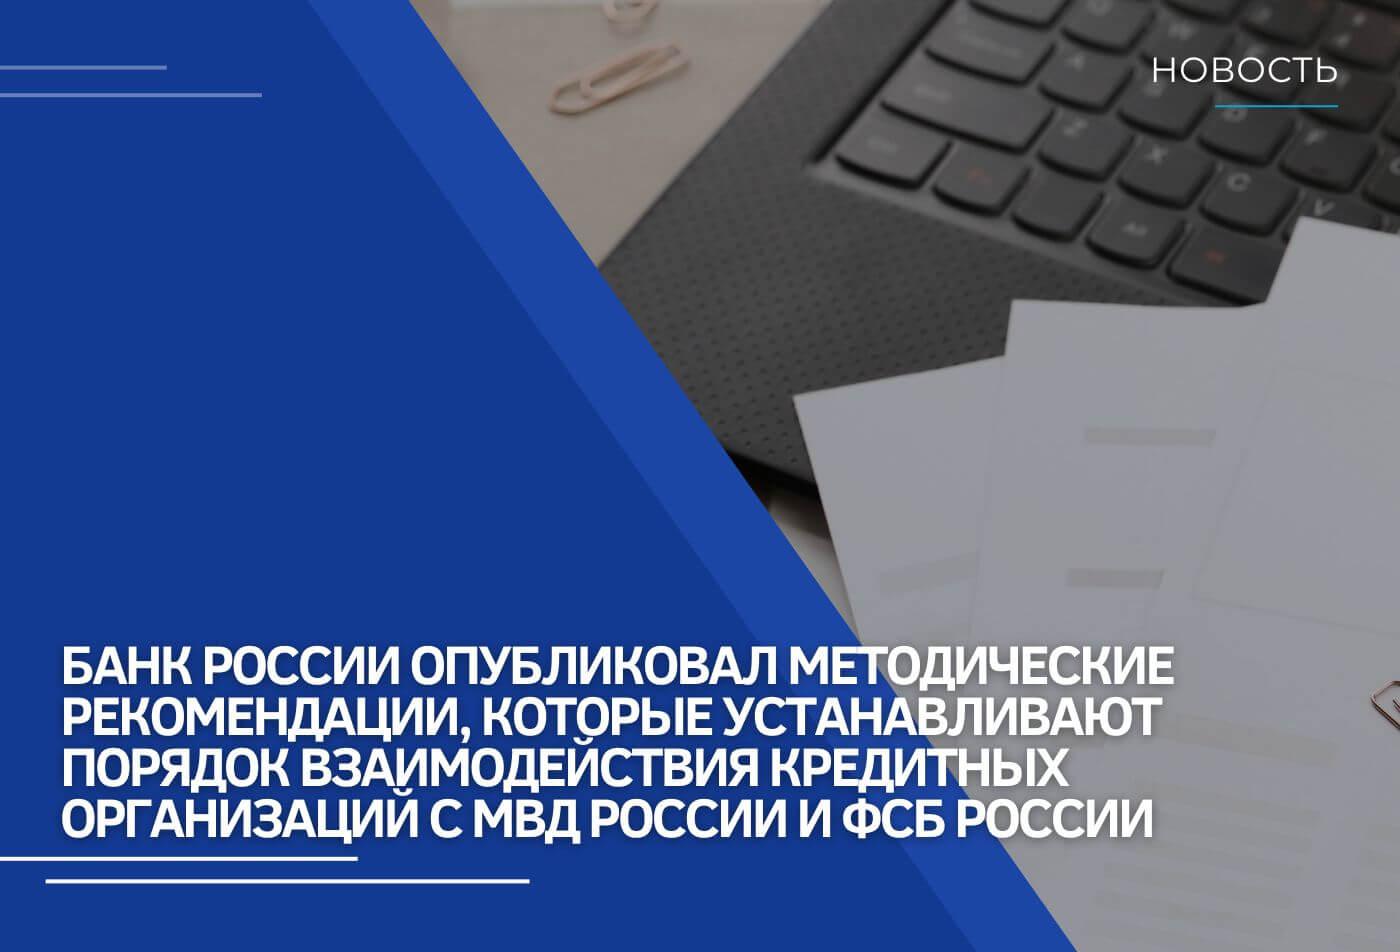 Методические рекомендации, которые устанавливают порядок взаимодействия кредитных организаций с МВД России и ФСБ России